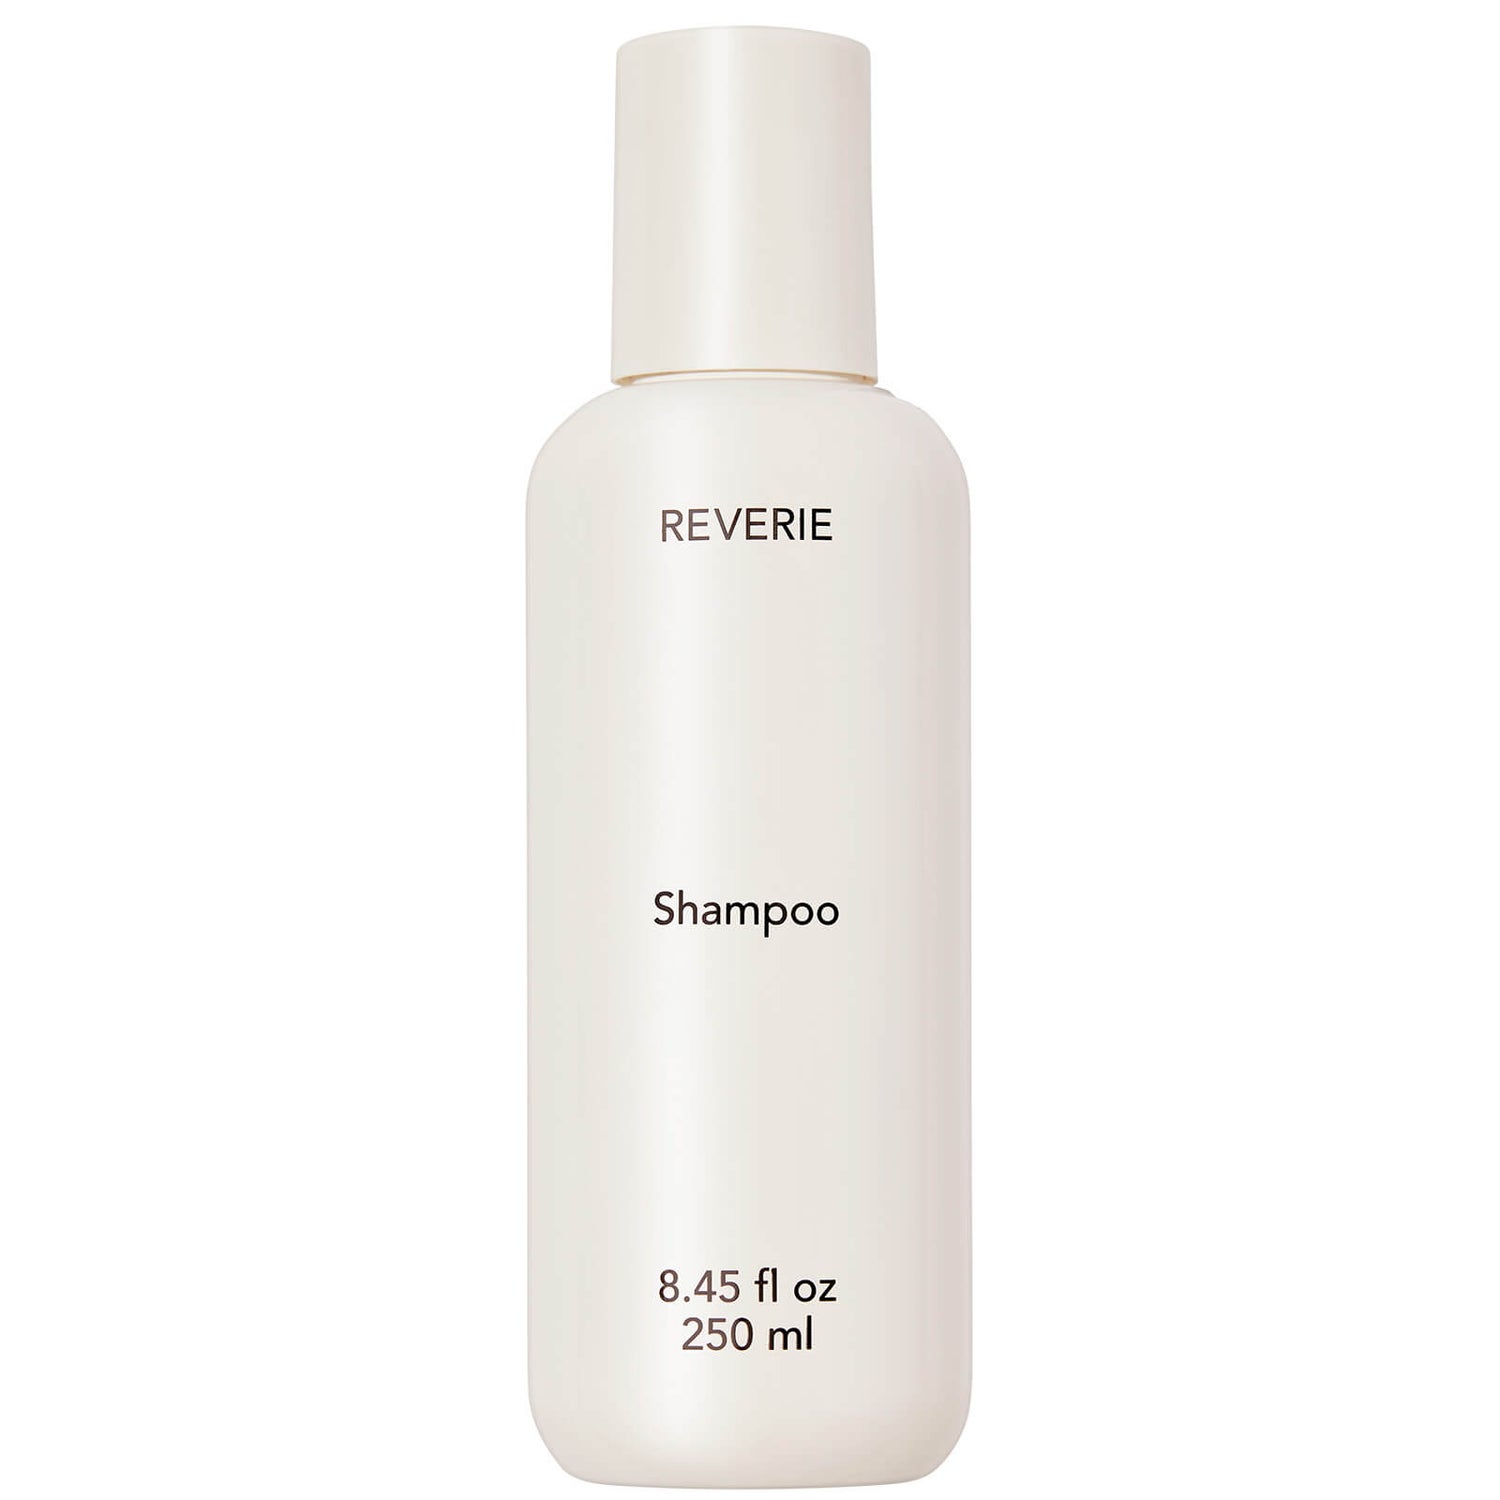 REVERIE Shampoo (8.1 fl. oz.)